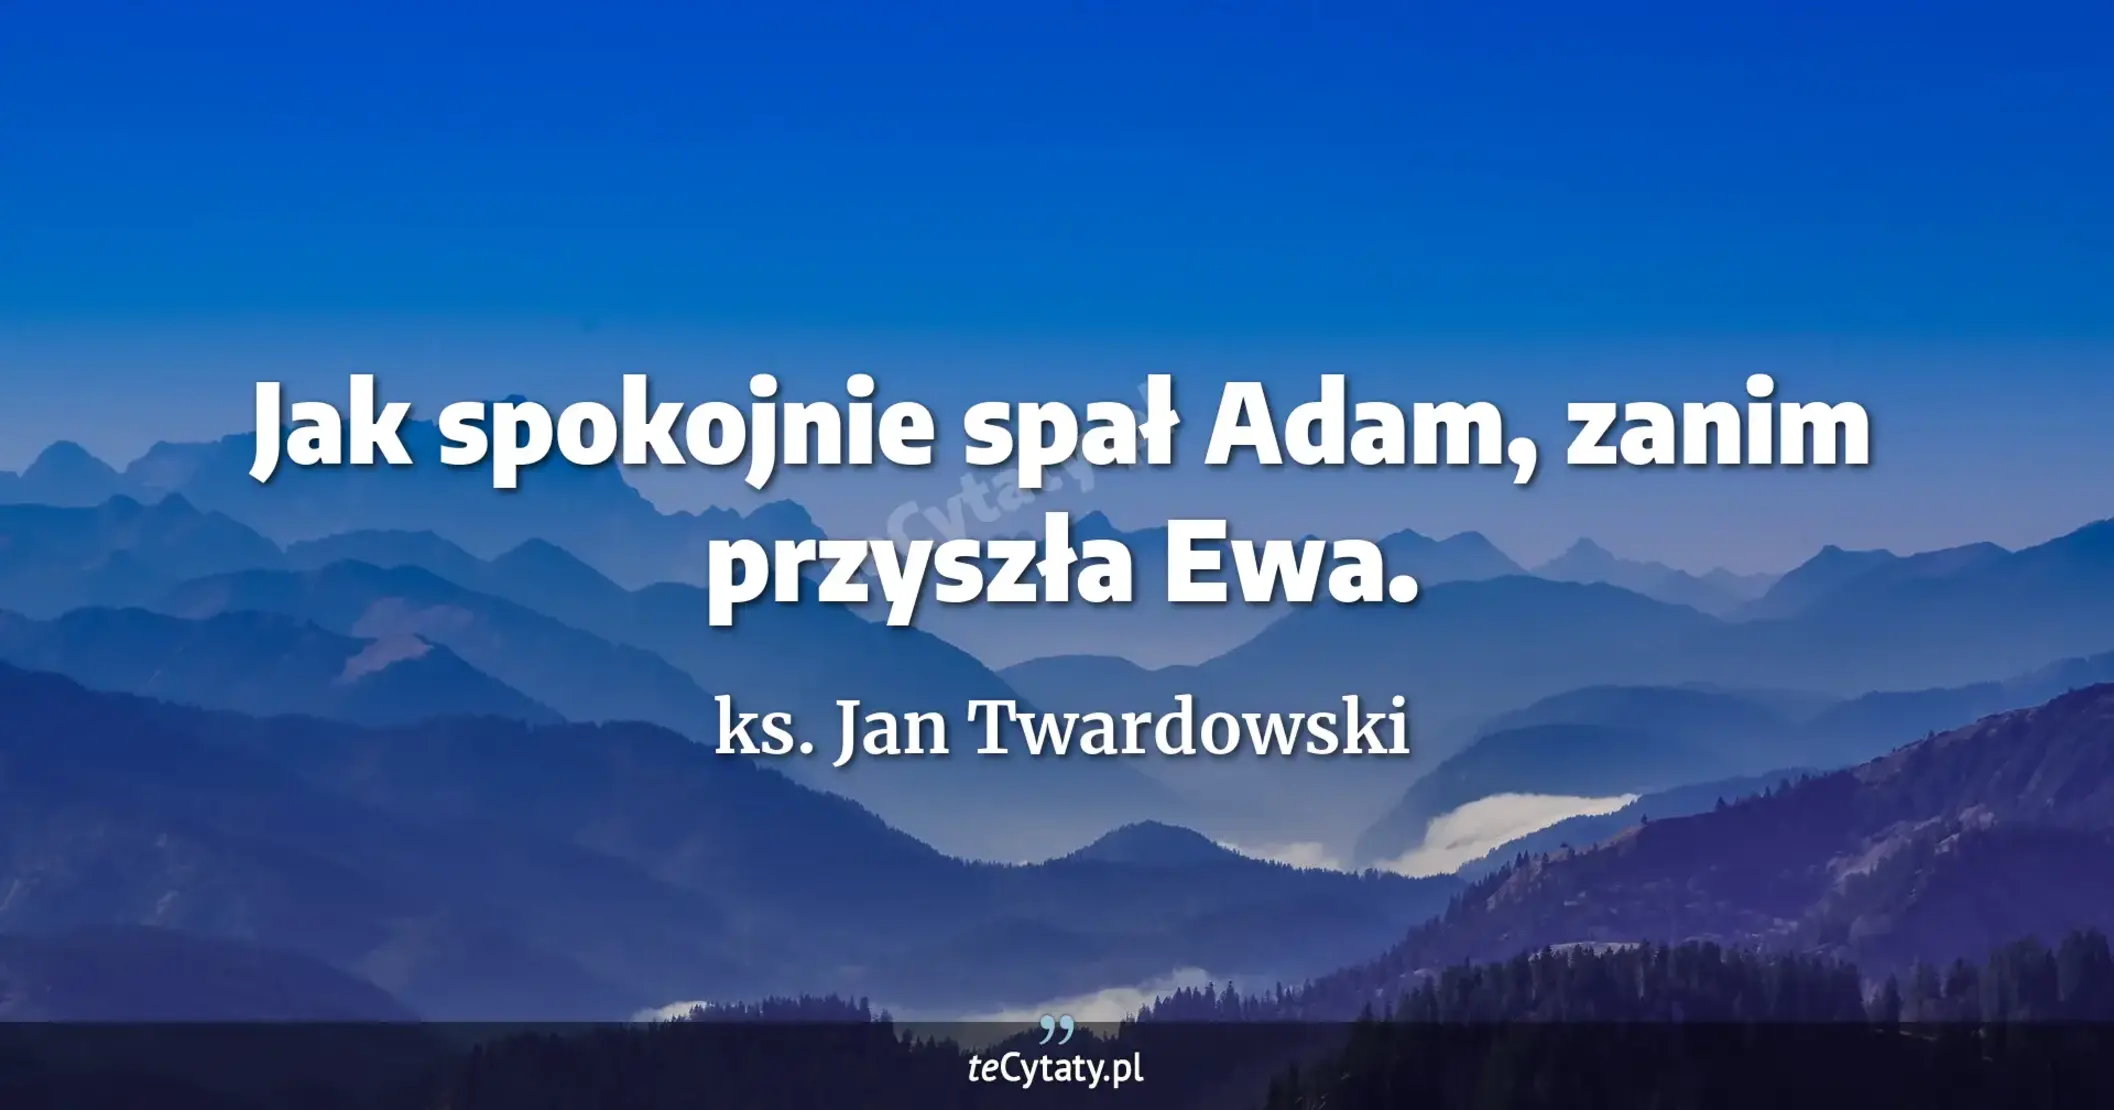 Jak spokojnie spał Adam, zanim przyszła Ewa. - ks. Jan Twardowski